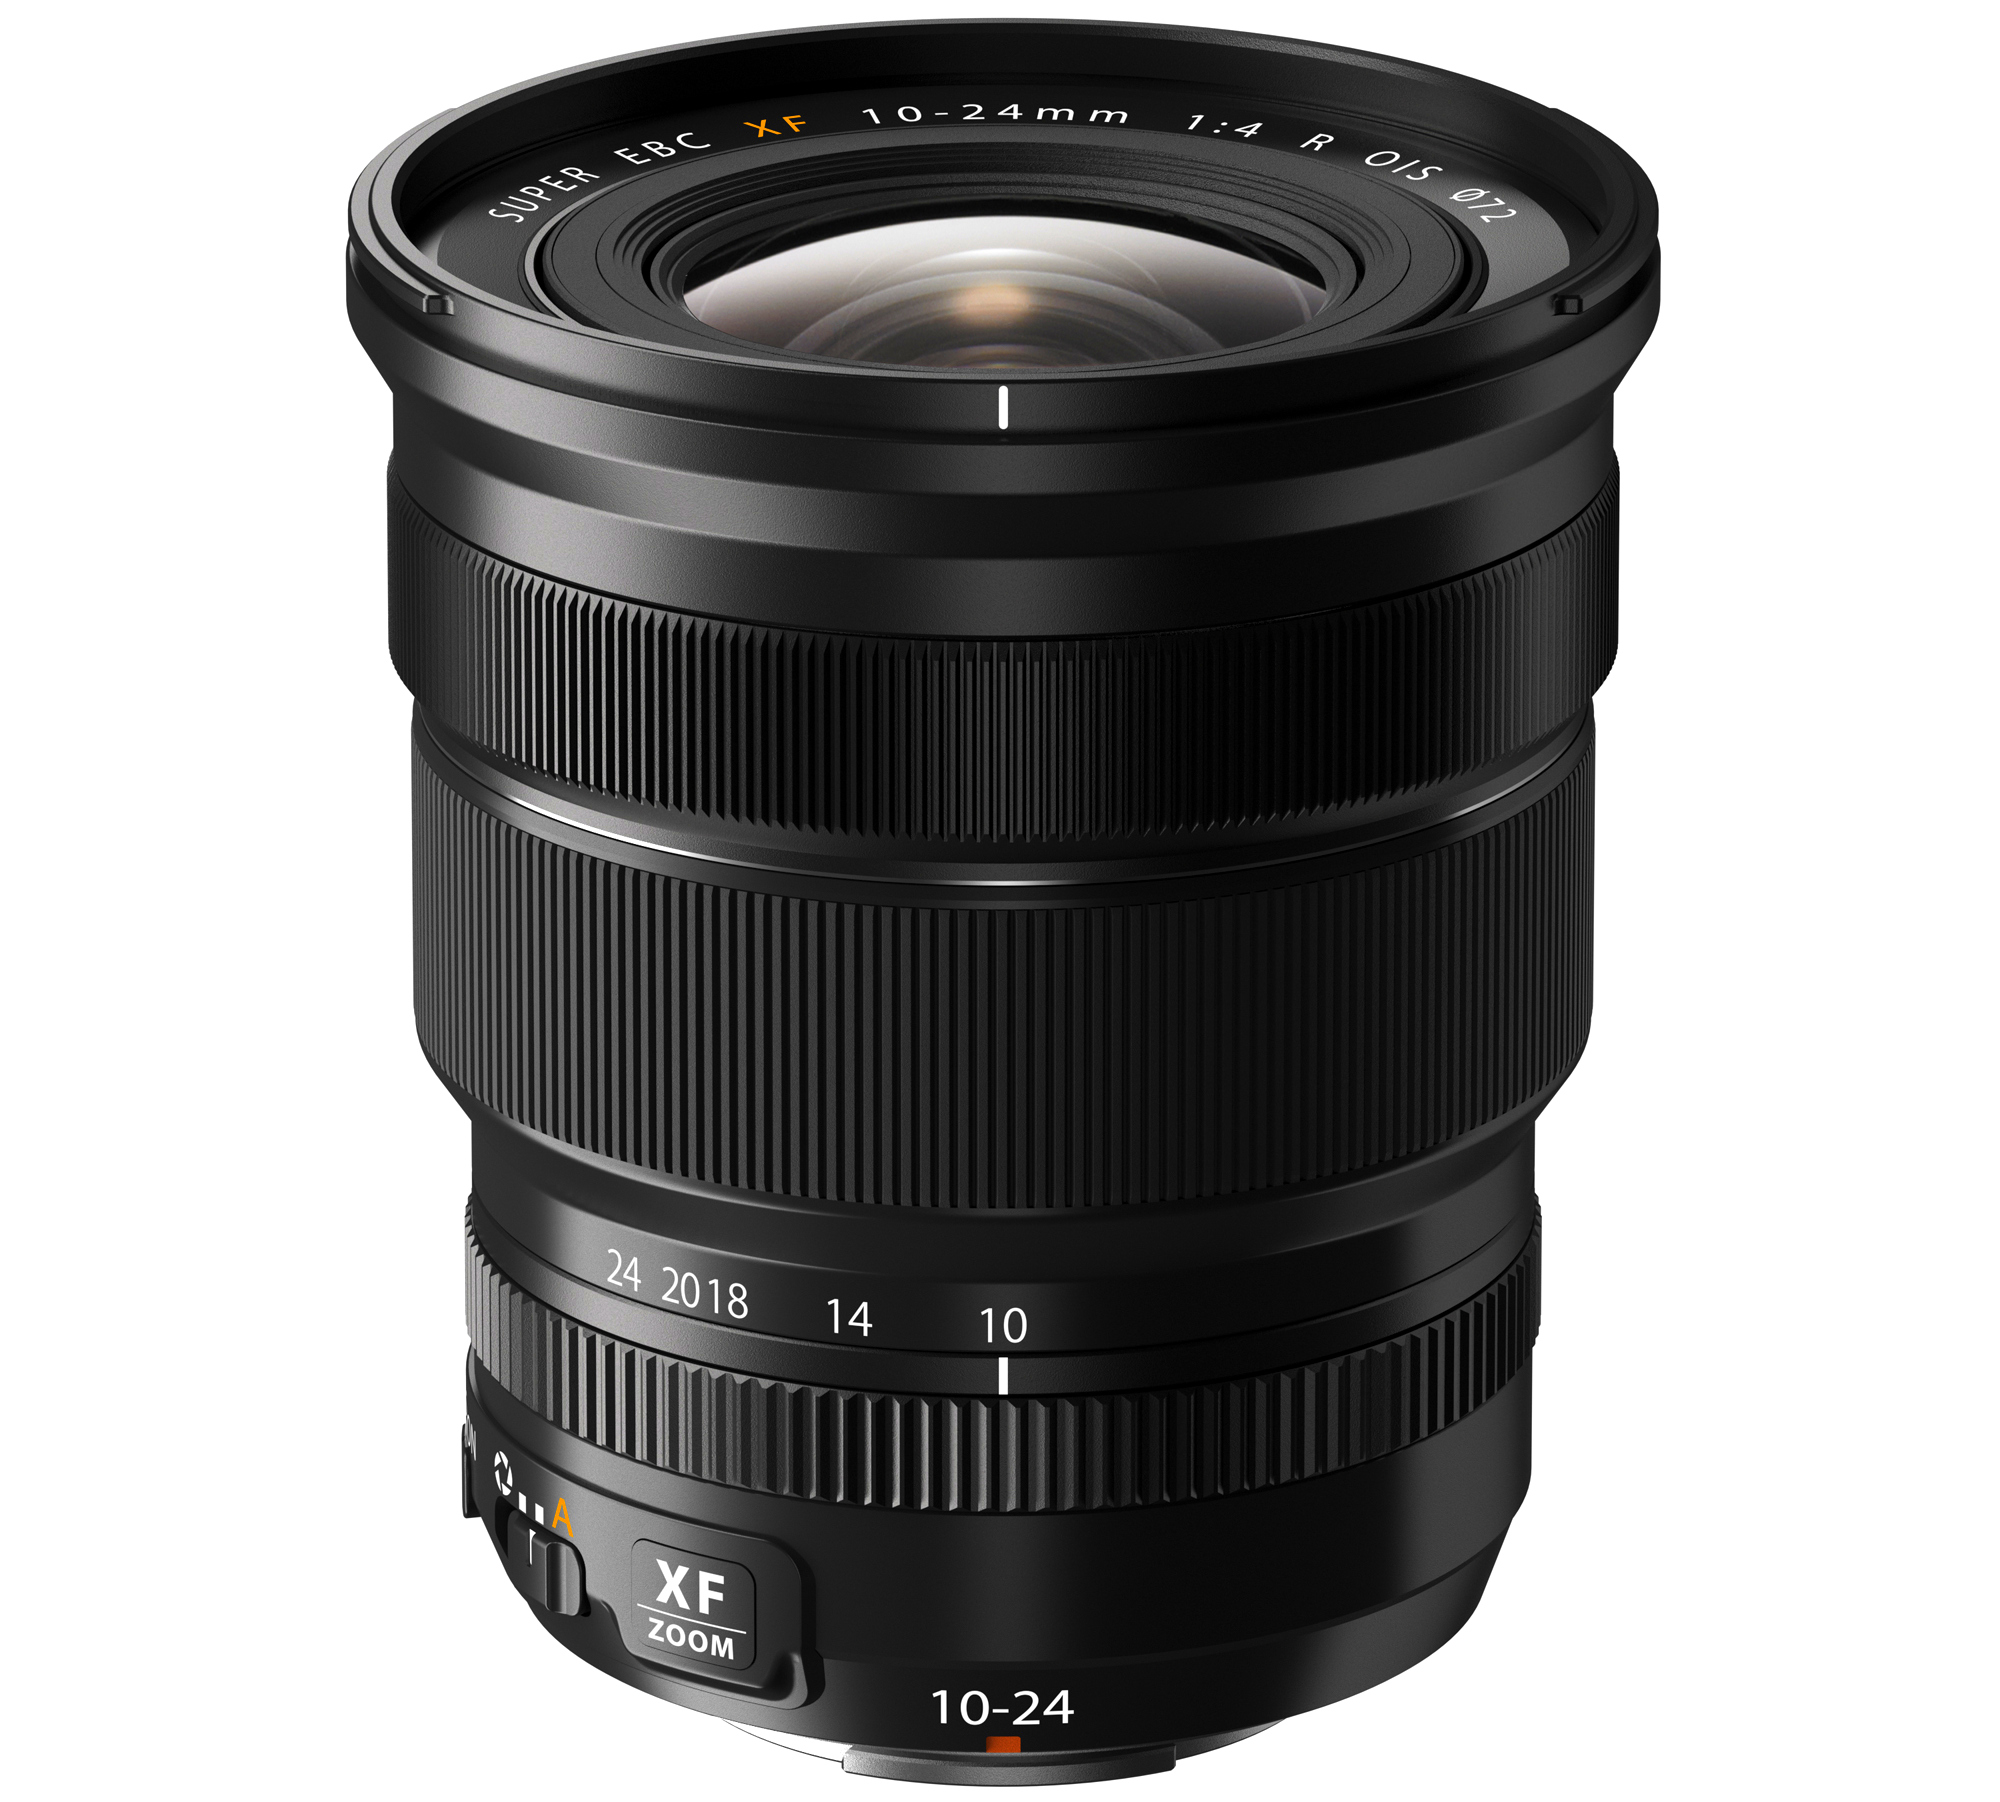 Fujinon Lens XF 10-24mm F4R OIS